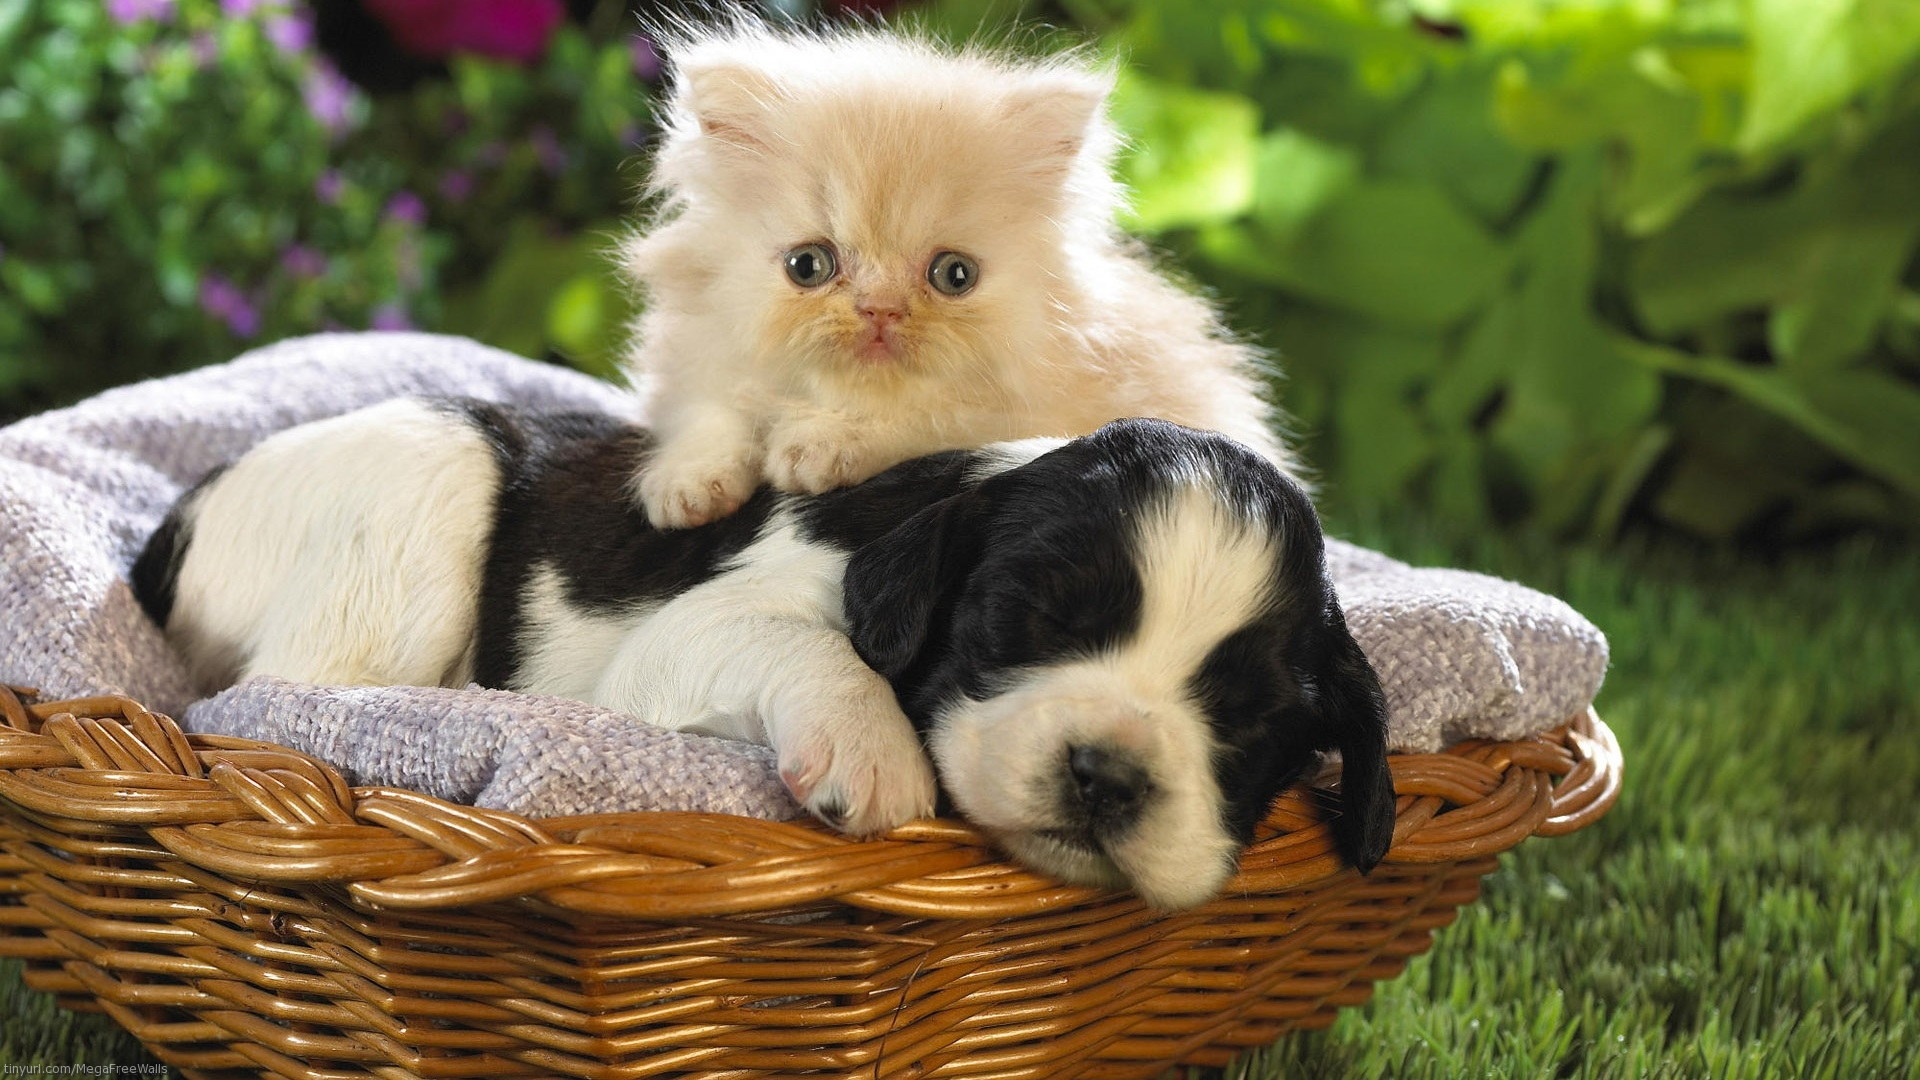 Free download wallpaper Cat, Kitten, Dog, Animal, Puppy, Basket, Cute, Baby Animal, Cat & Dog on your PC desktop